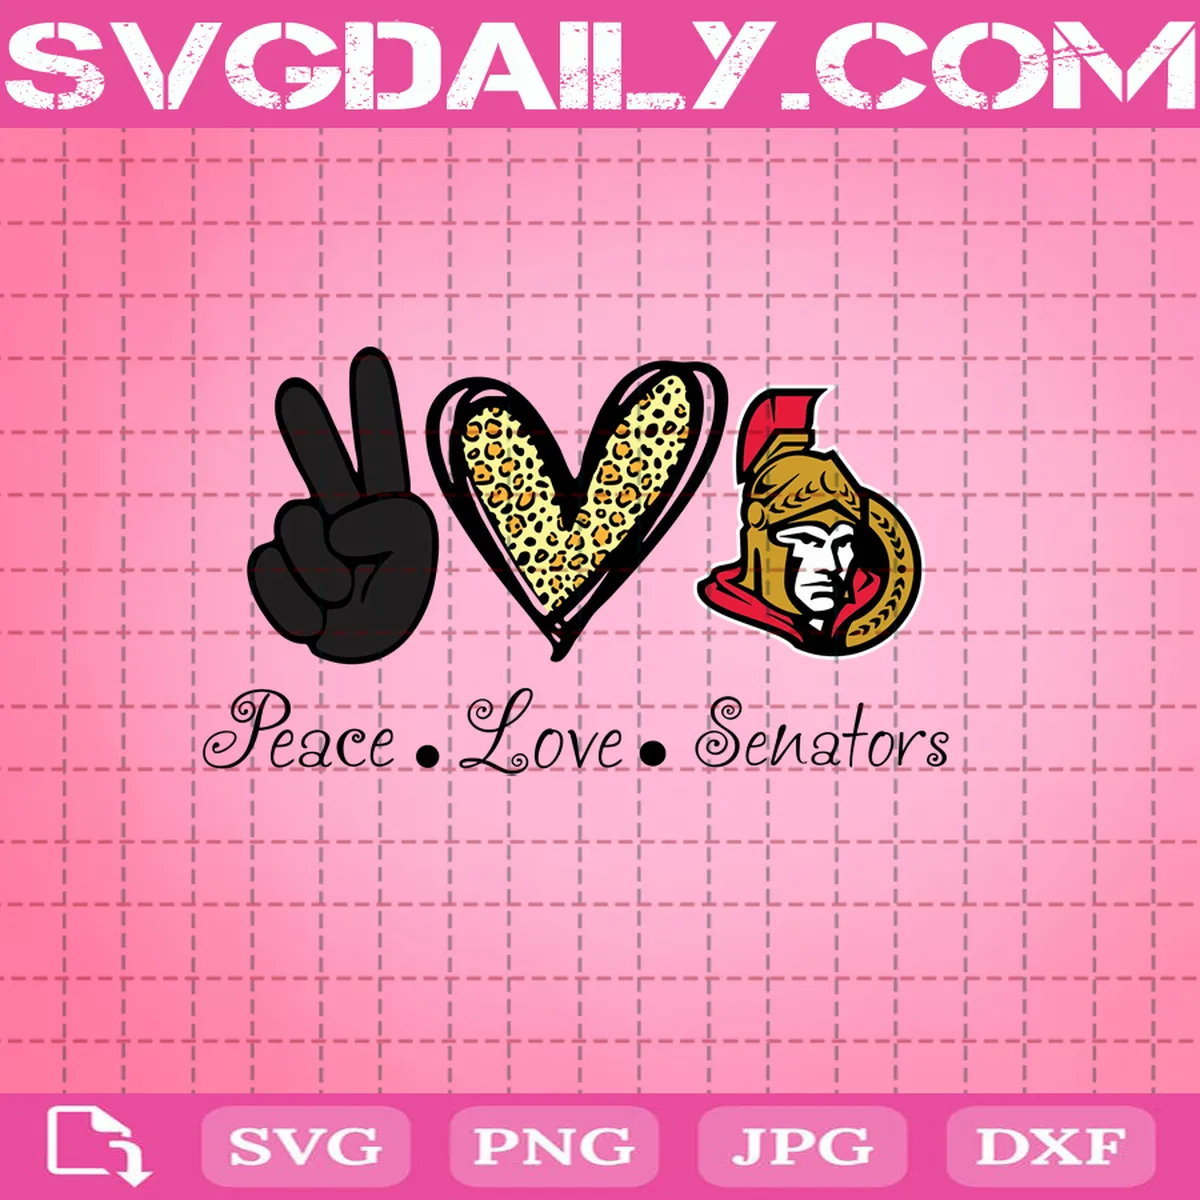 Peace Love Ottawa Senators Svg, Ottawa Senators Svg, Senators Svg, NHL Svg, Sport Svg, Hockey Svg, Hockey Team Svg